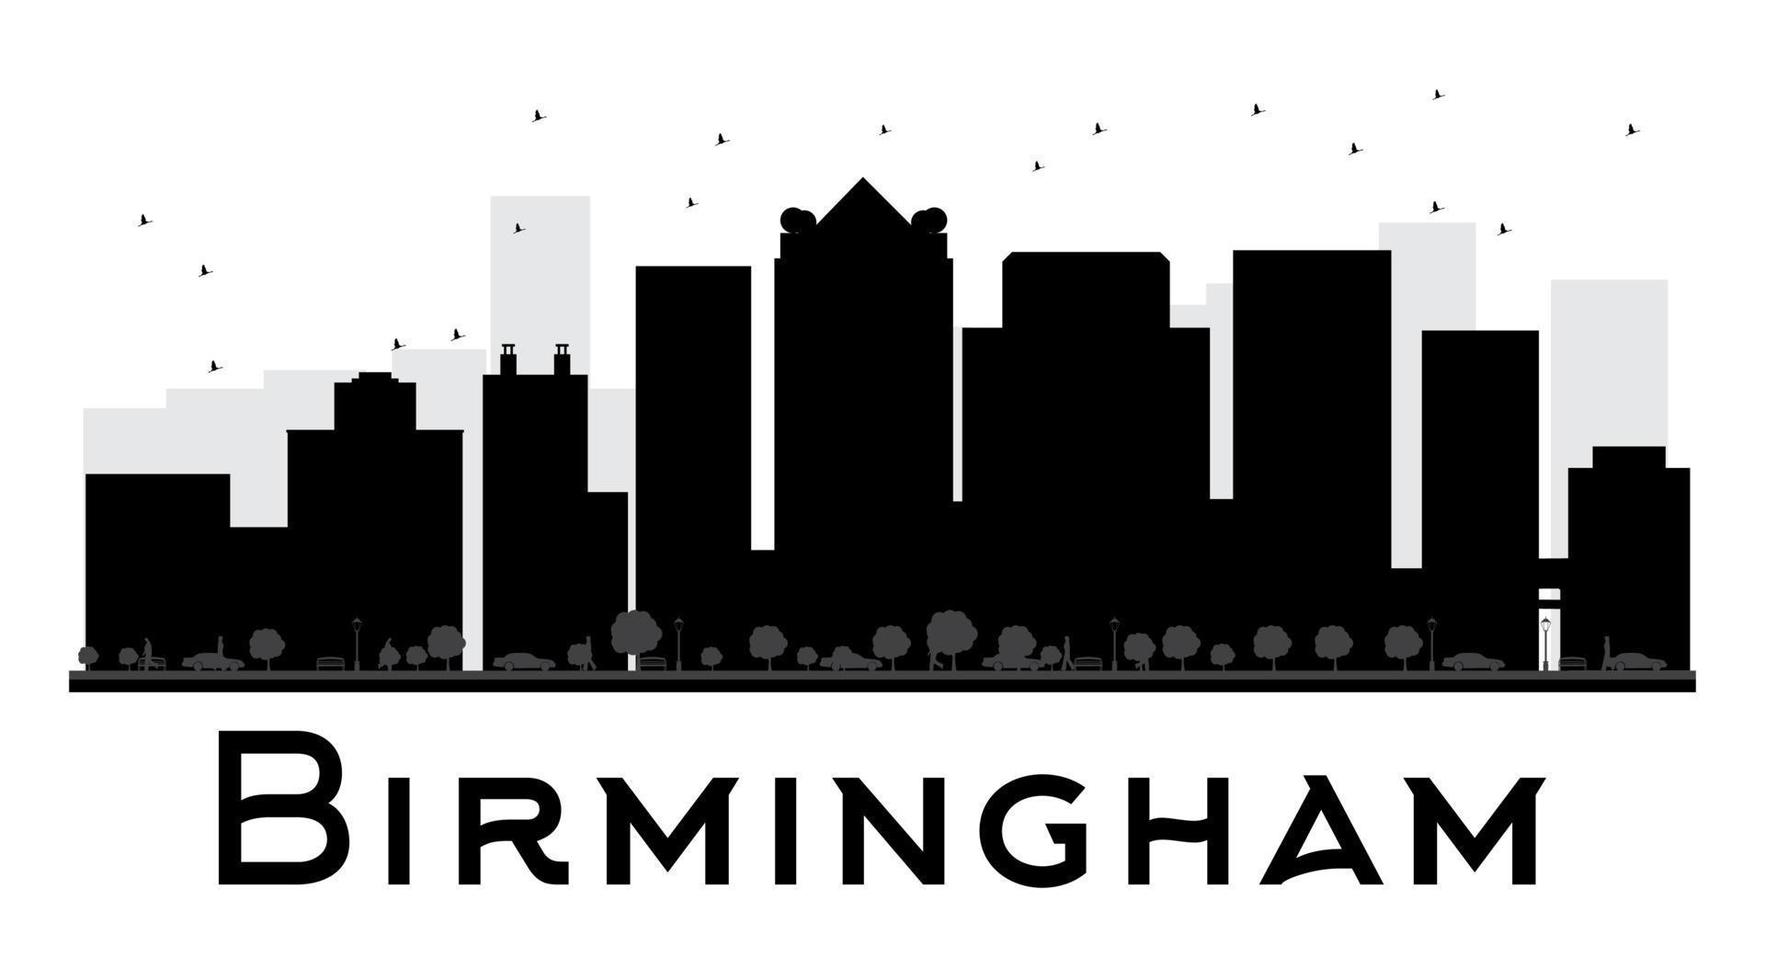 birmingham city skyline silhouette noir et blanc vecteur